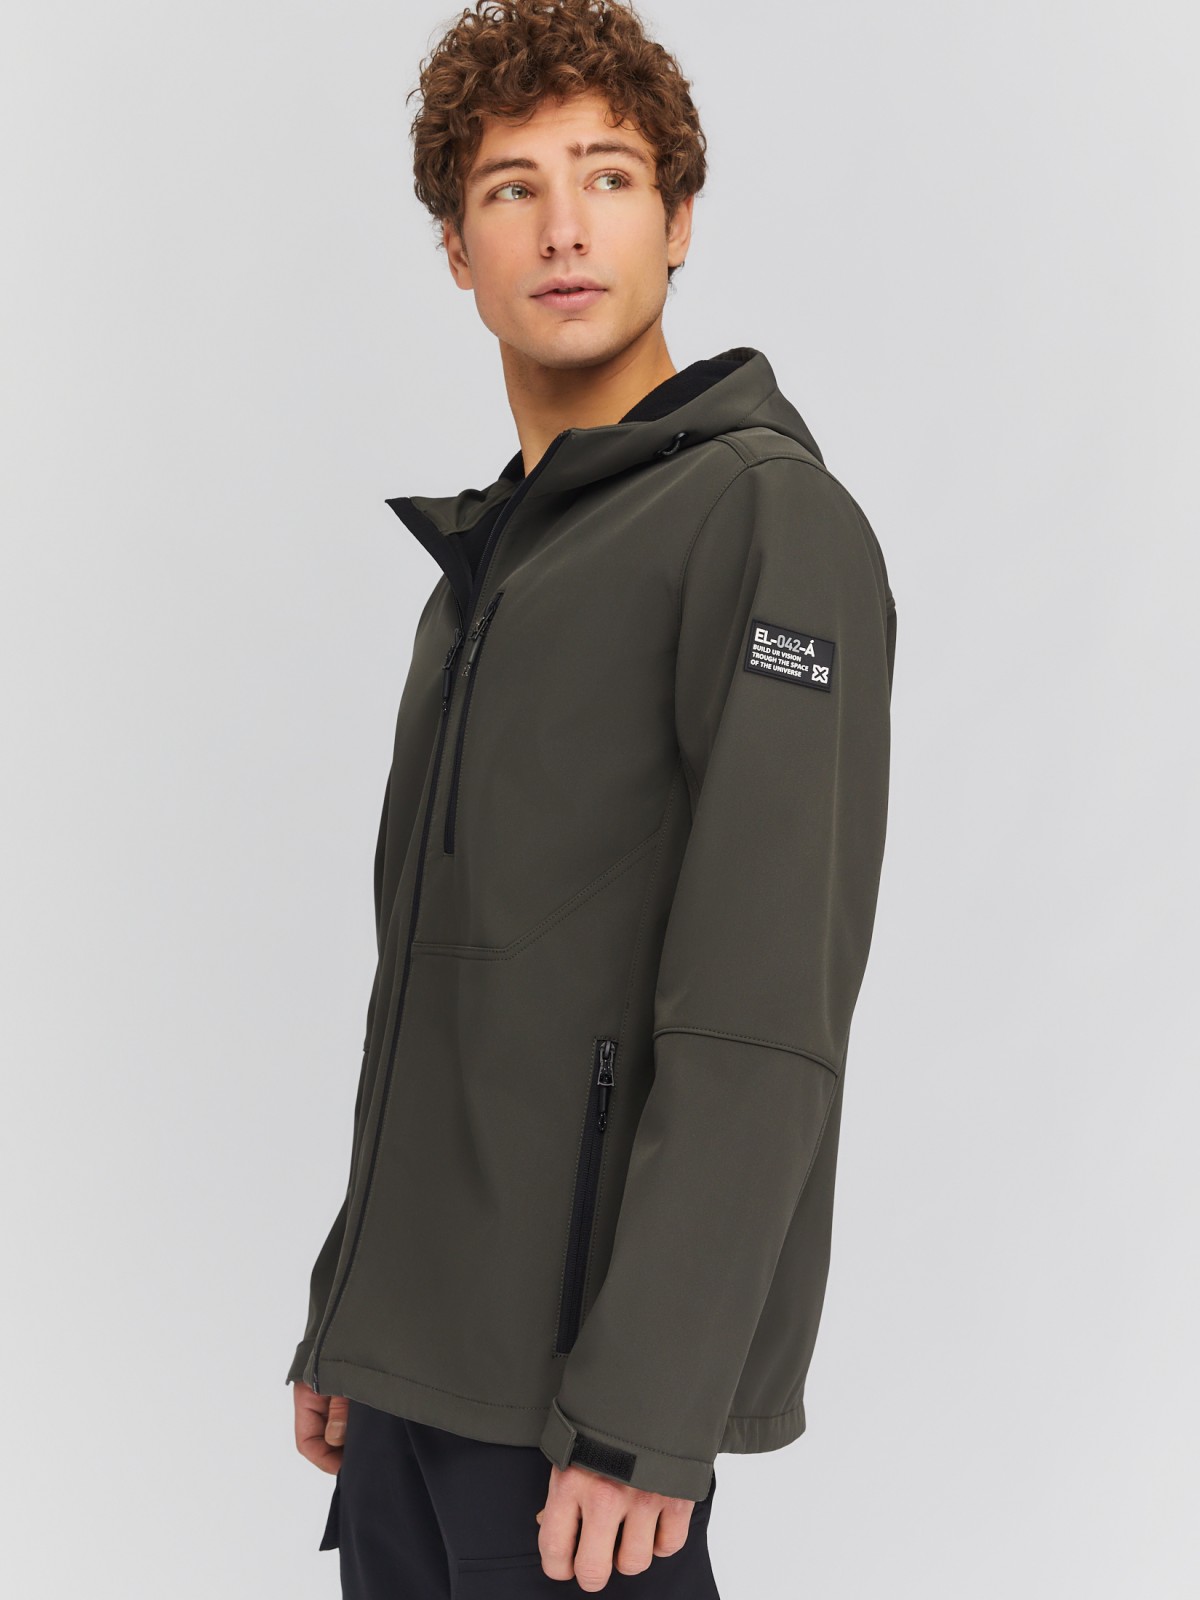 Лёгкая куртка-ветровка с капюшоном zolla 014135602014, цвет хаки, размер S - фото 3